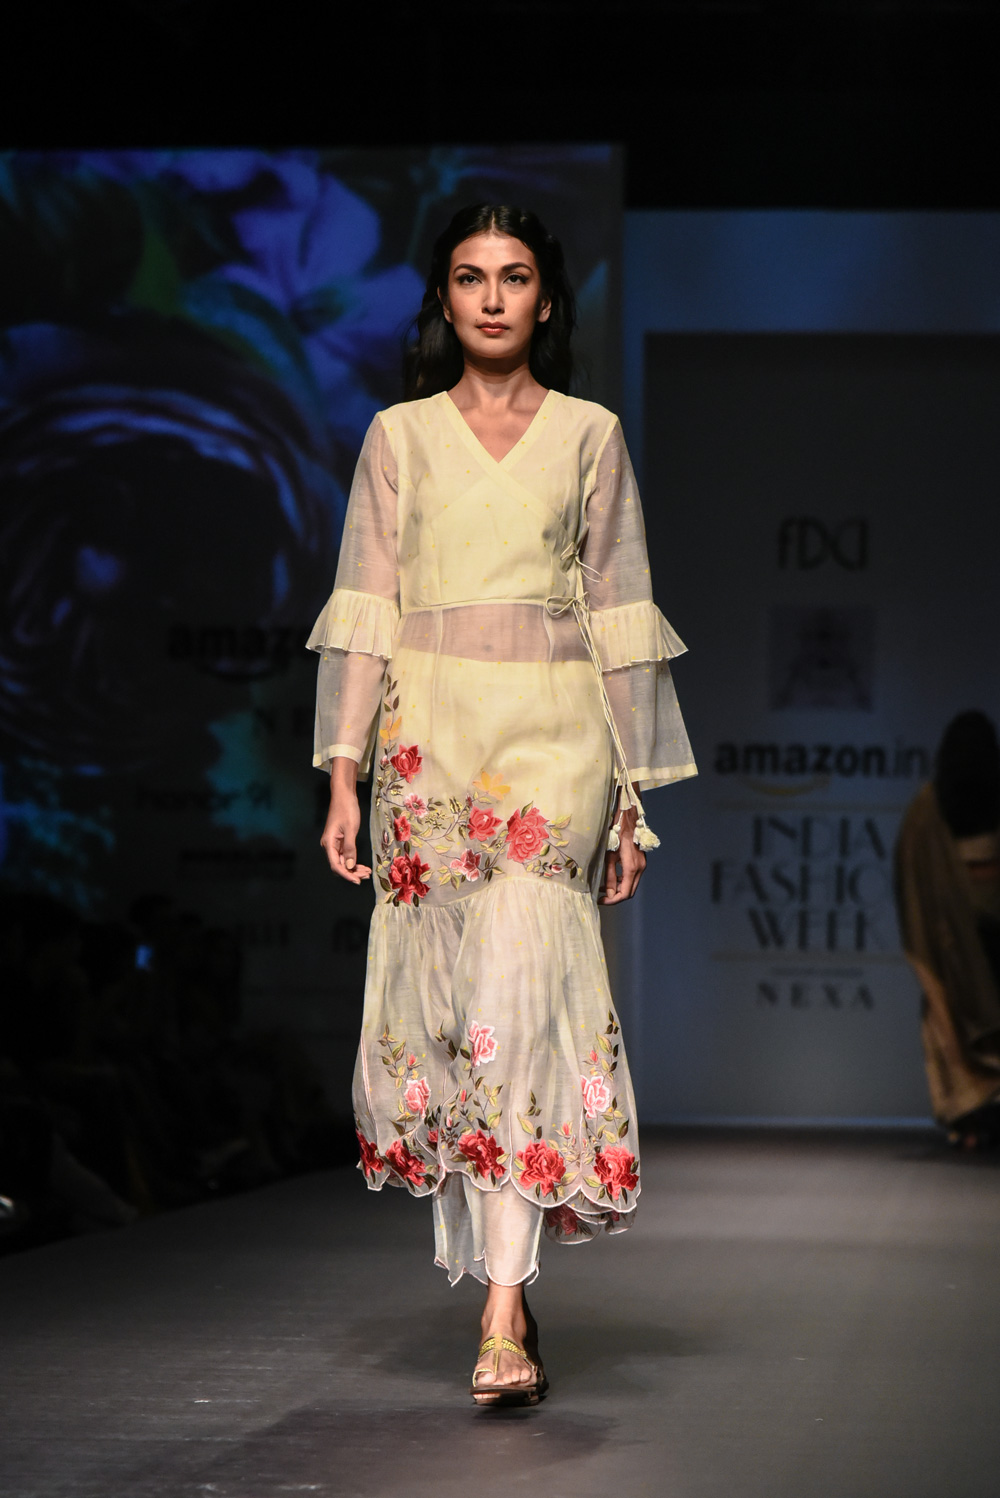 Pramaa by Pratimaa FDCI Amazon India Fashion Week Spring Summer 2018 Look 12